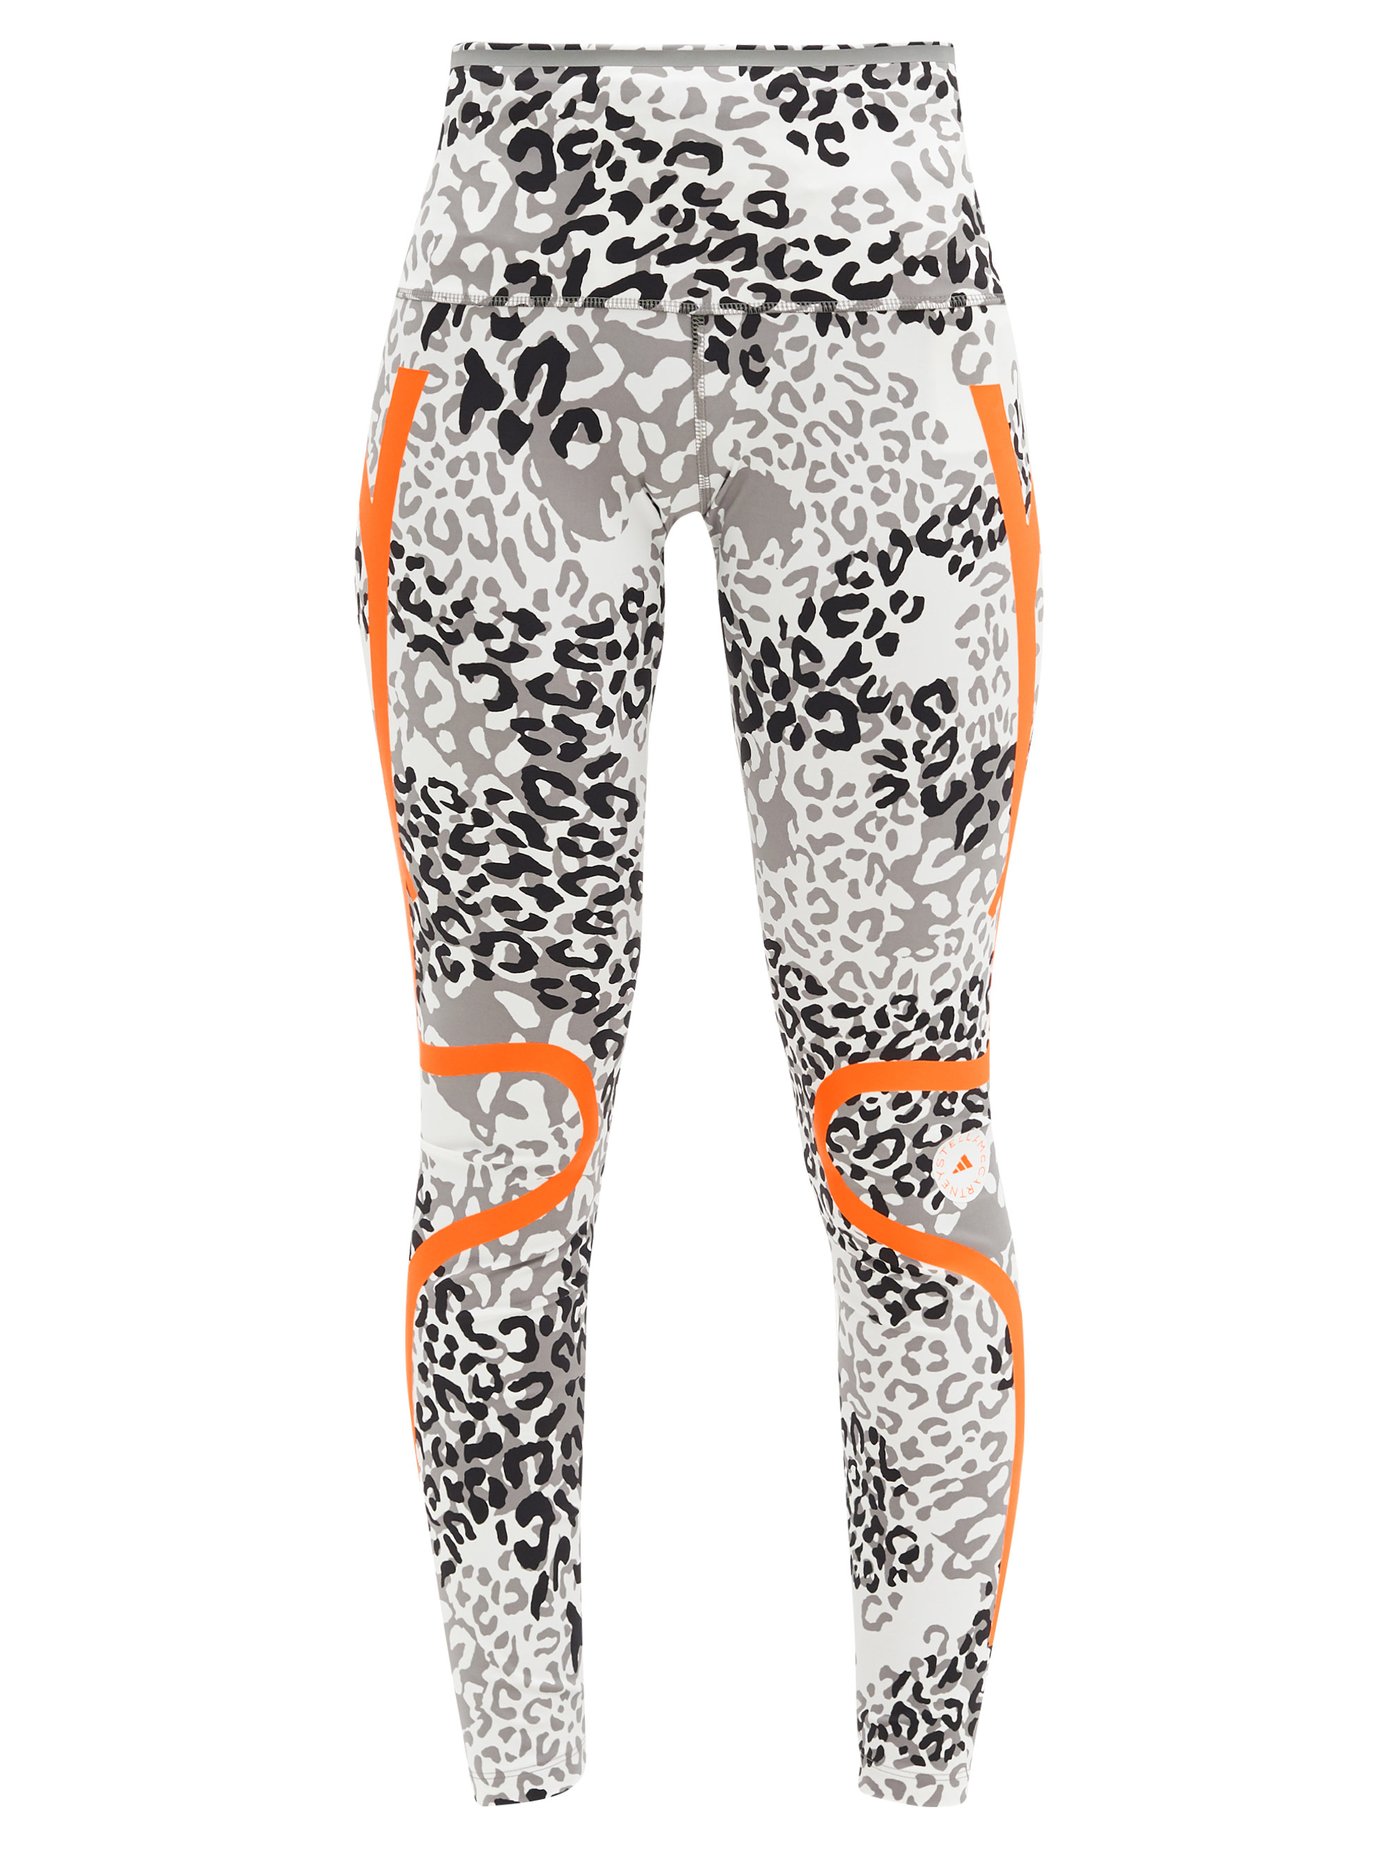 leopard adidas leggings